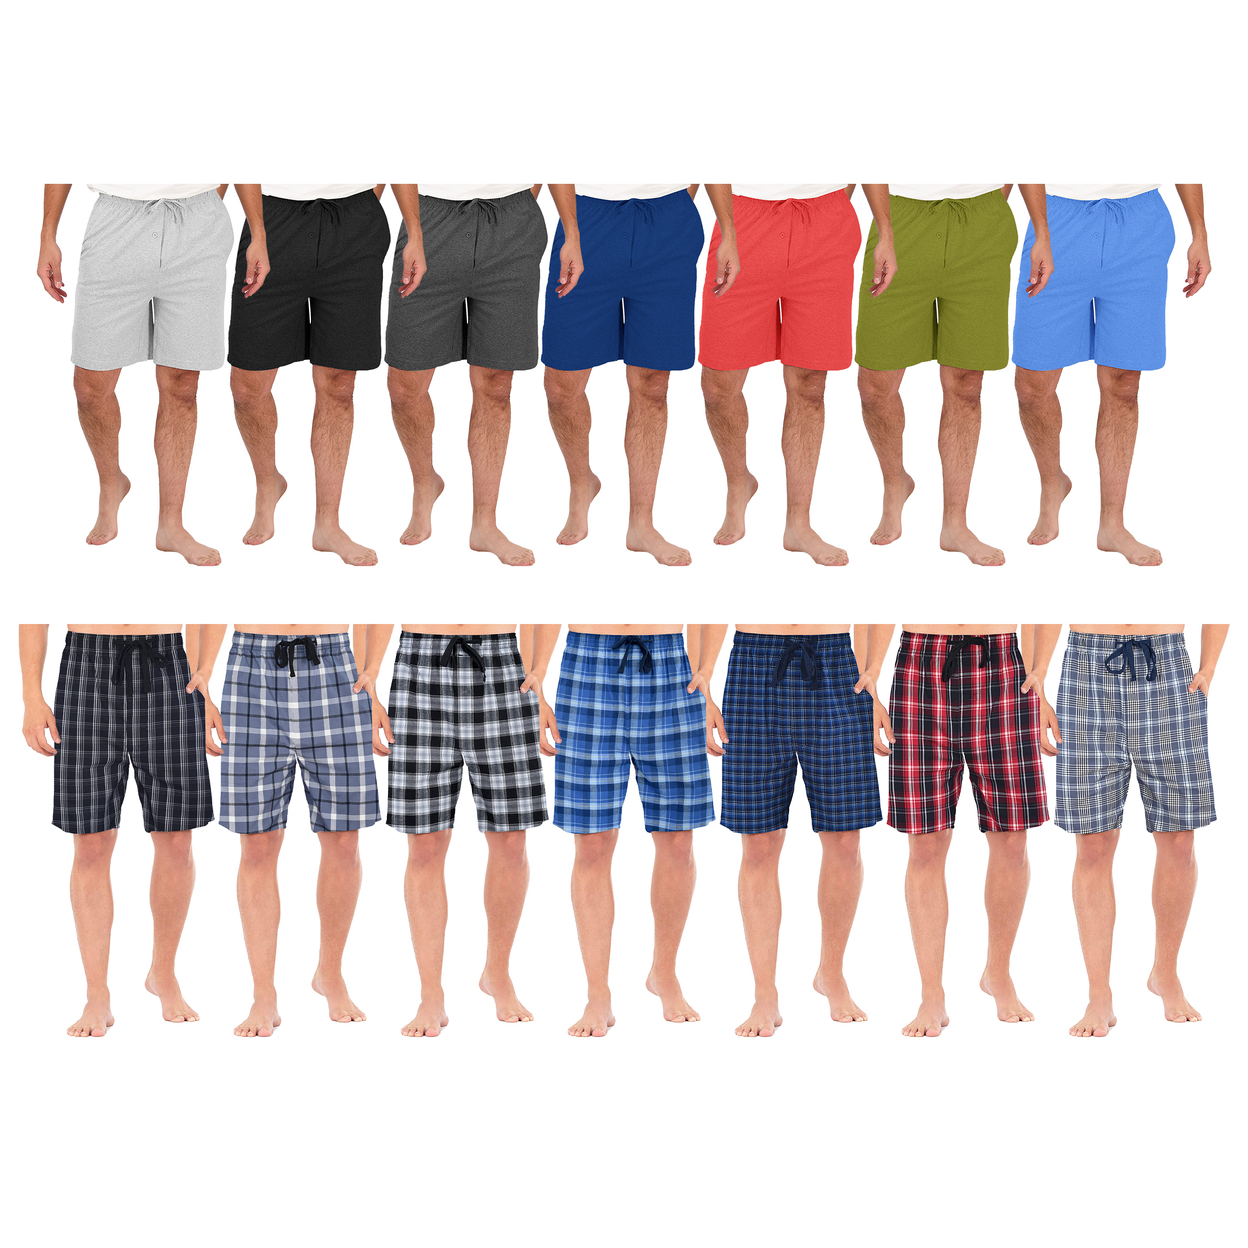 Men's Ultra-Soft Knit Lounge Pajama Sleep Shorts - Plaid, Large